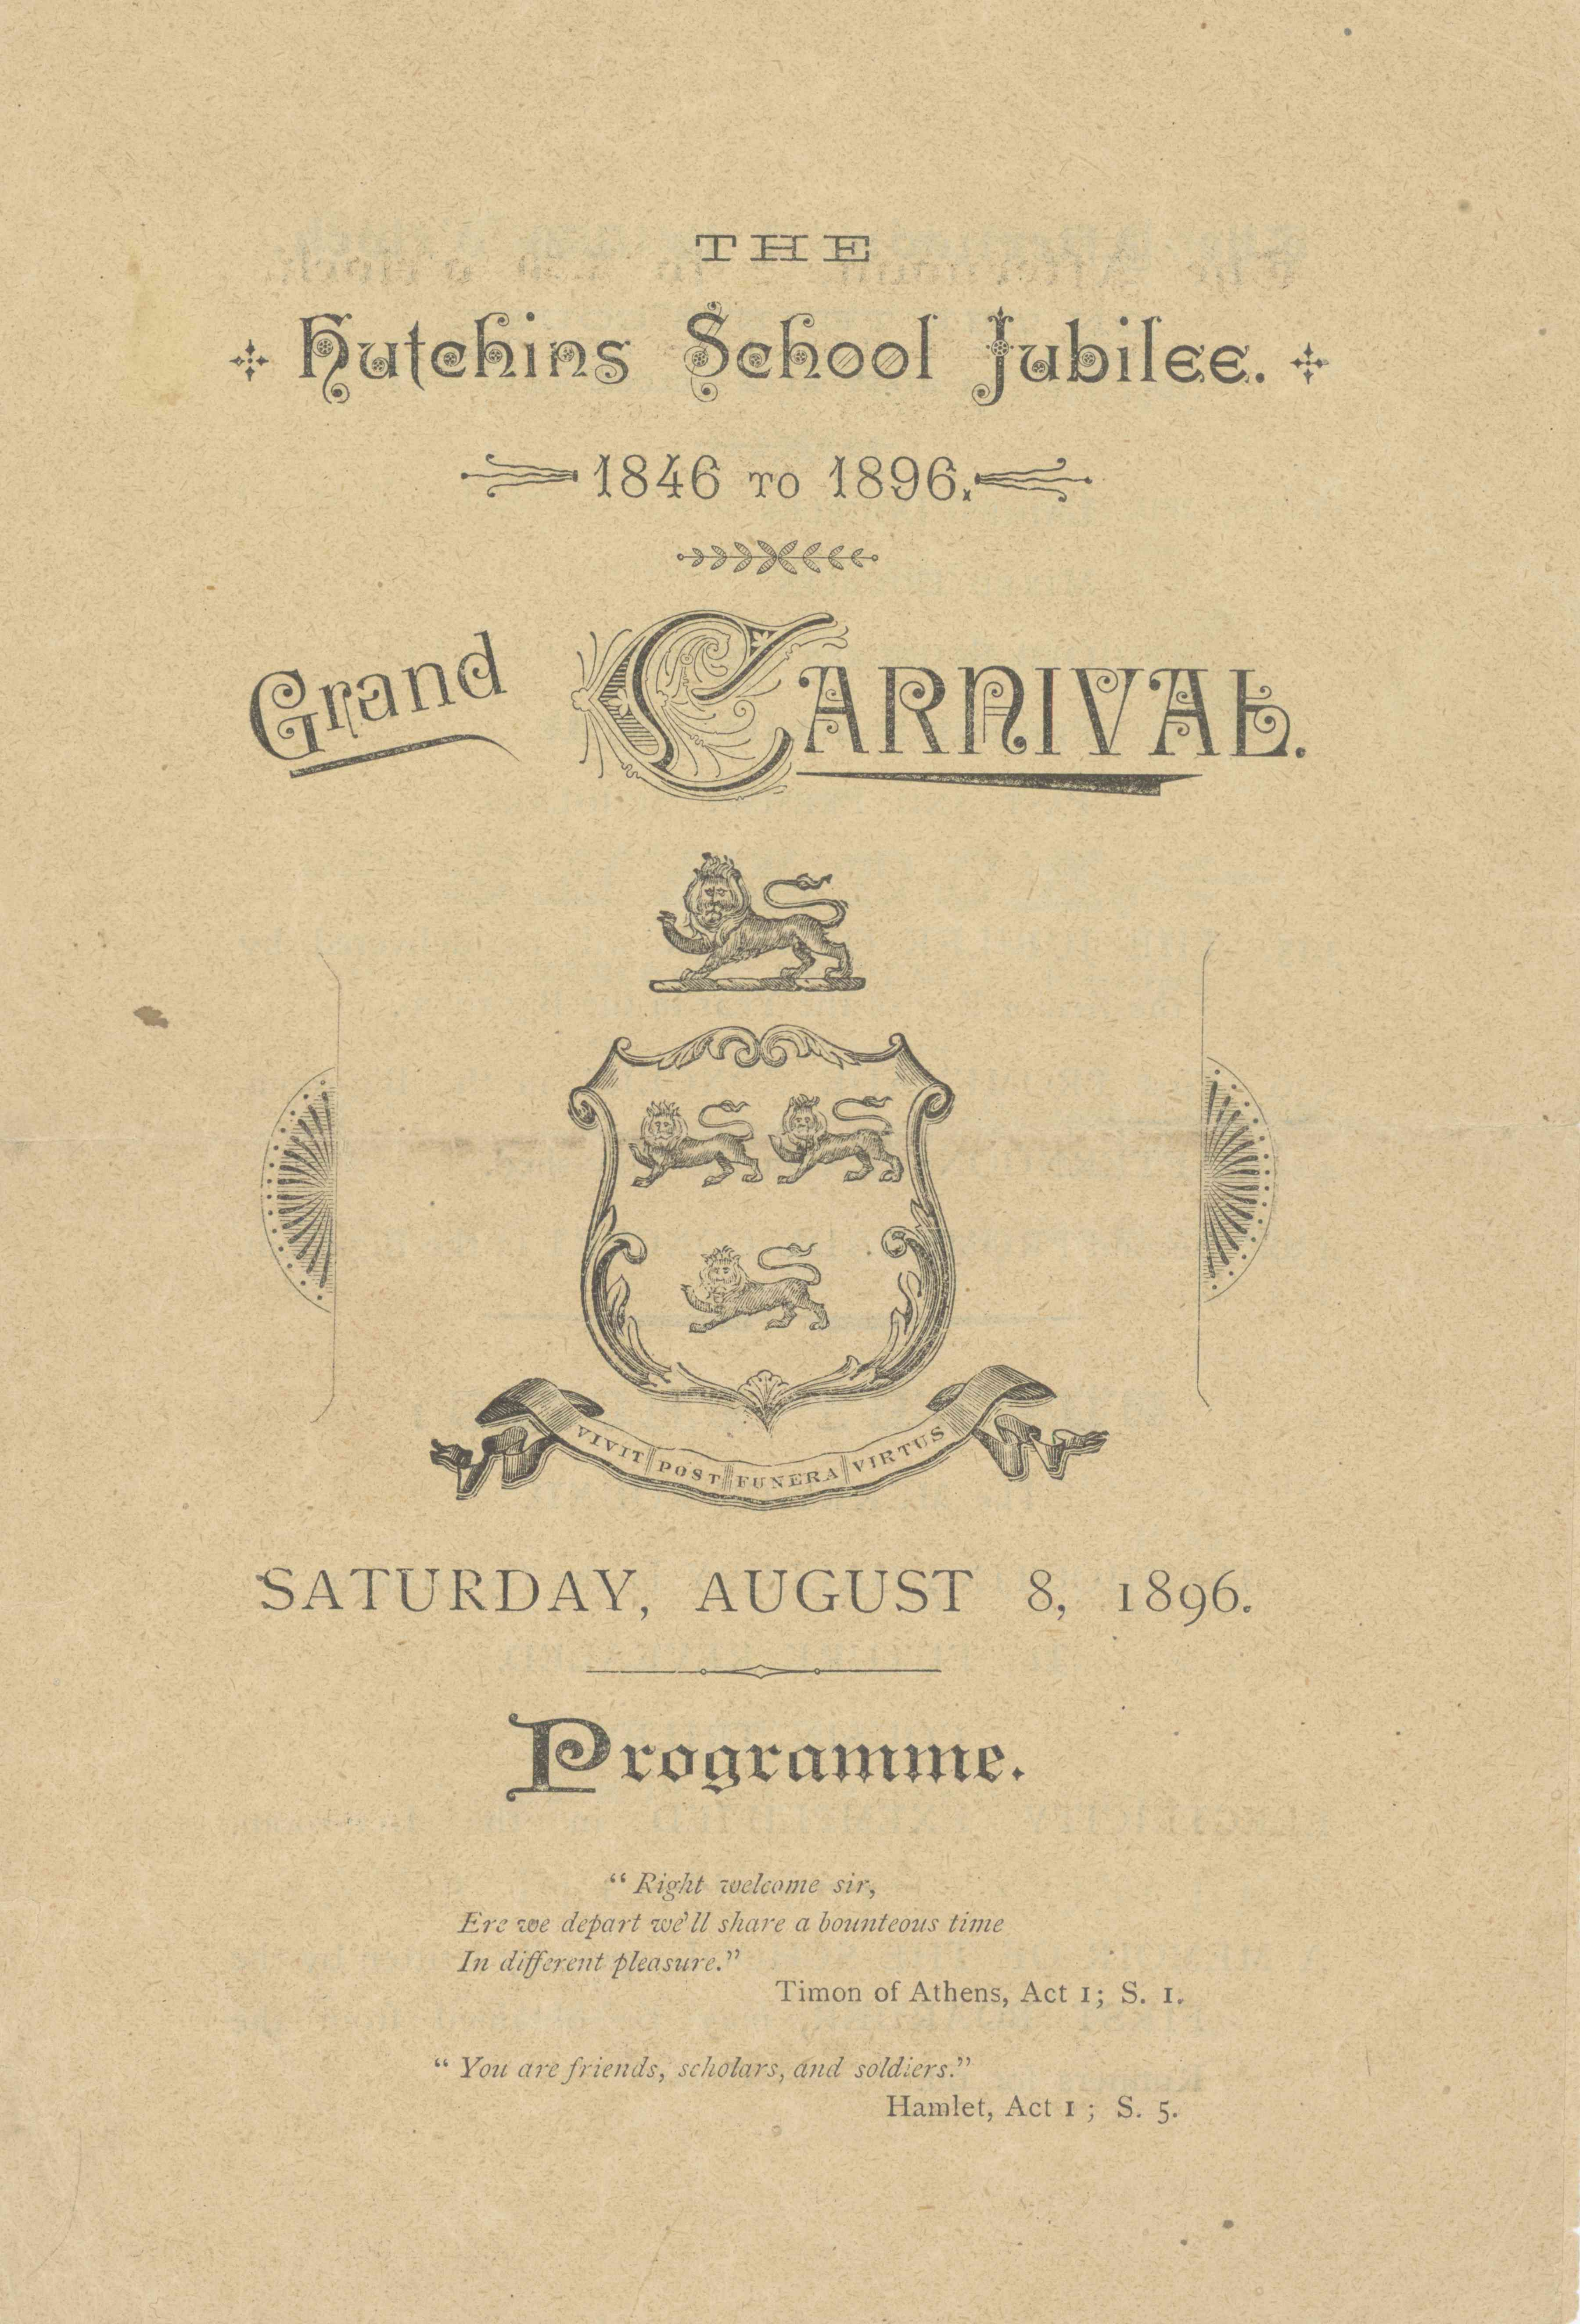 Jubilee Carnival program, 1896.